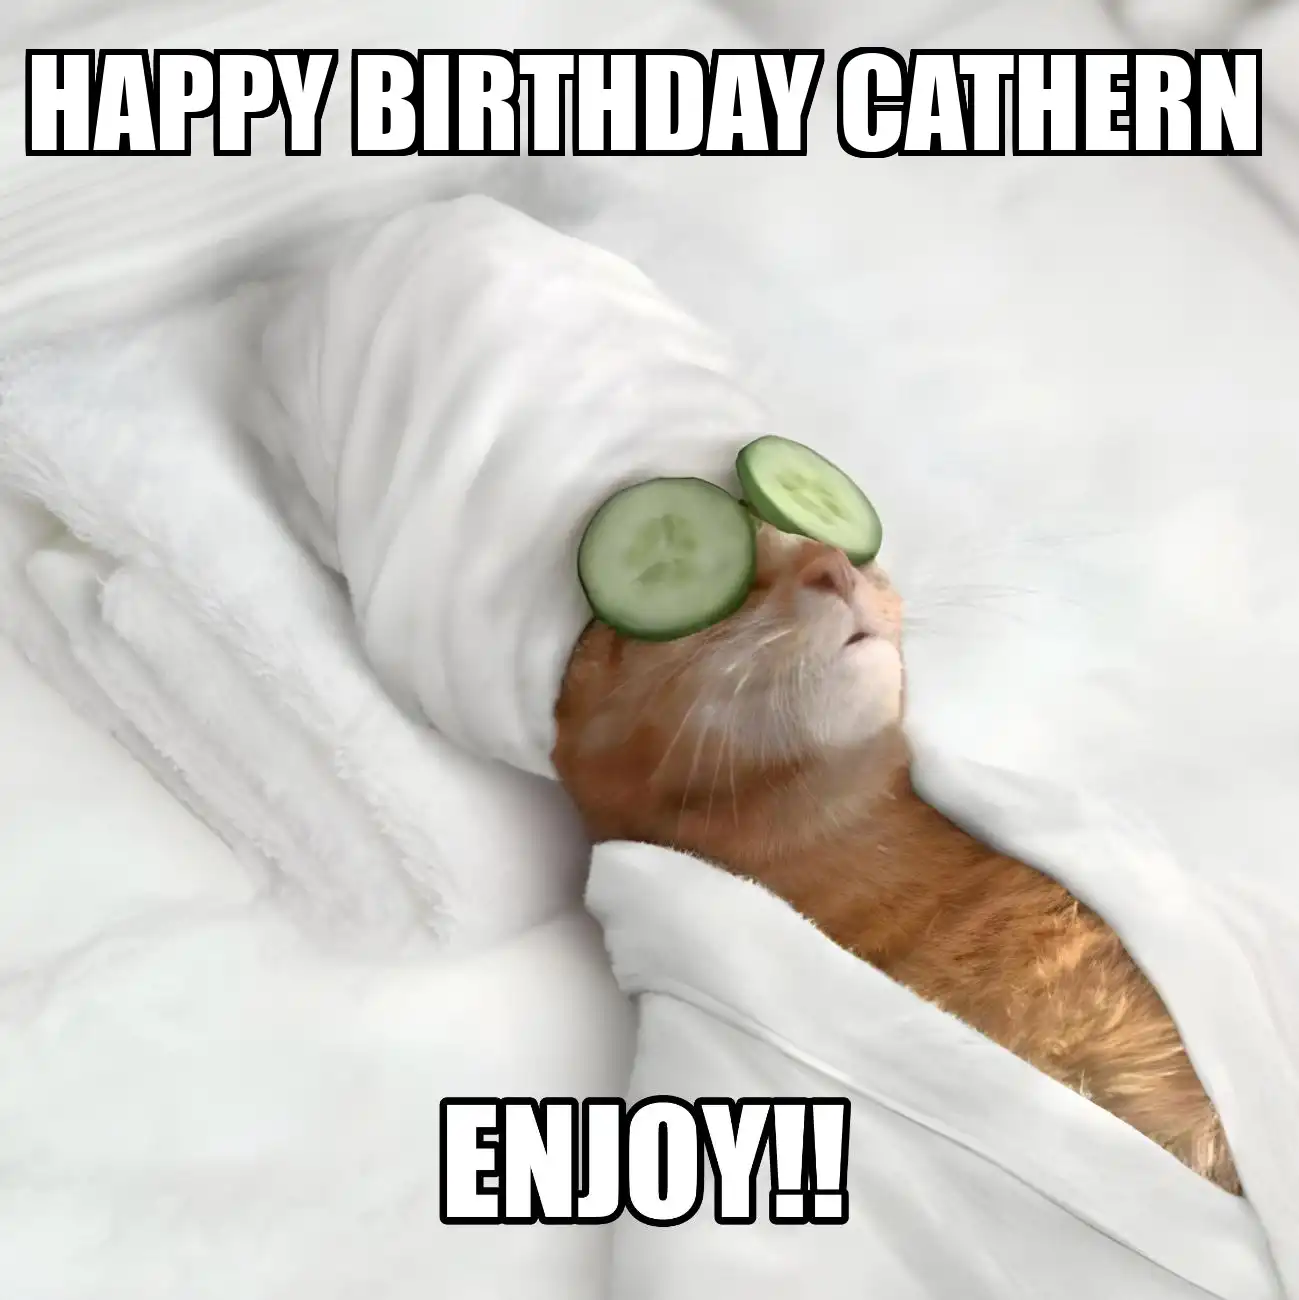 Happy Birthday Cathern Enjoy Cat Meme